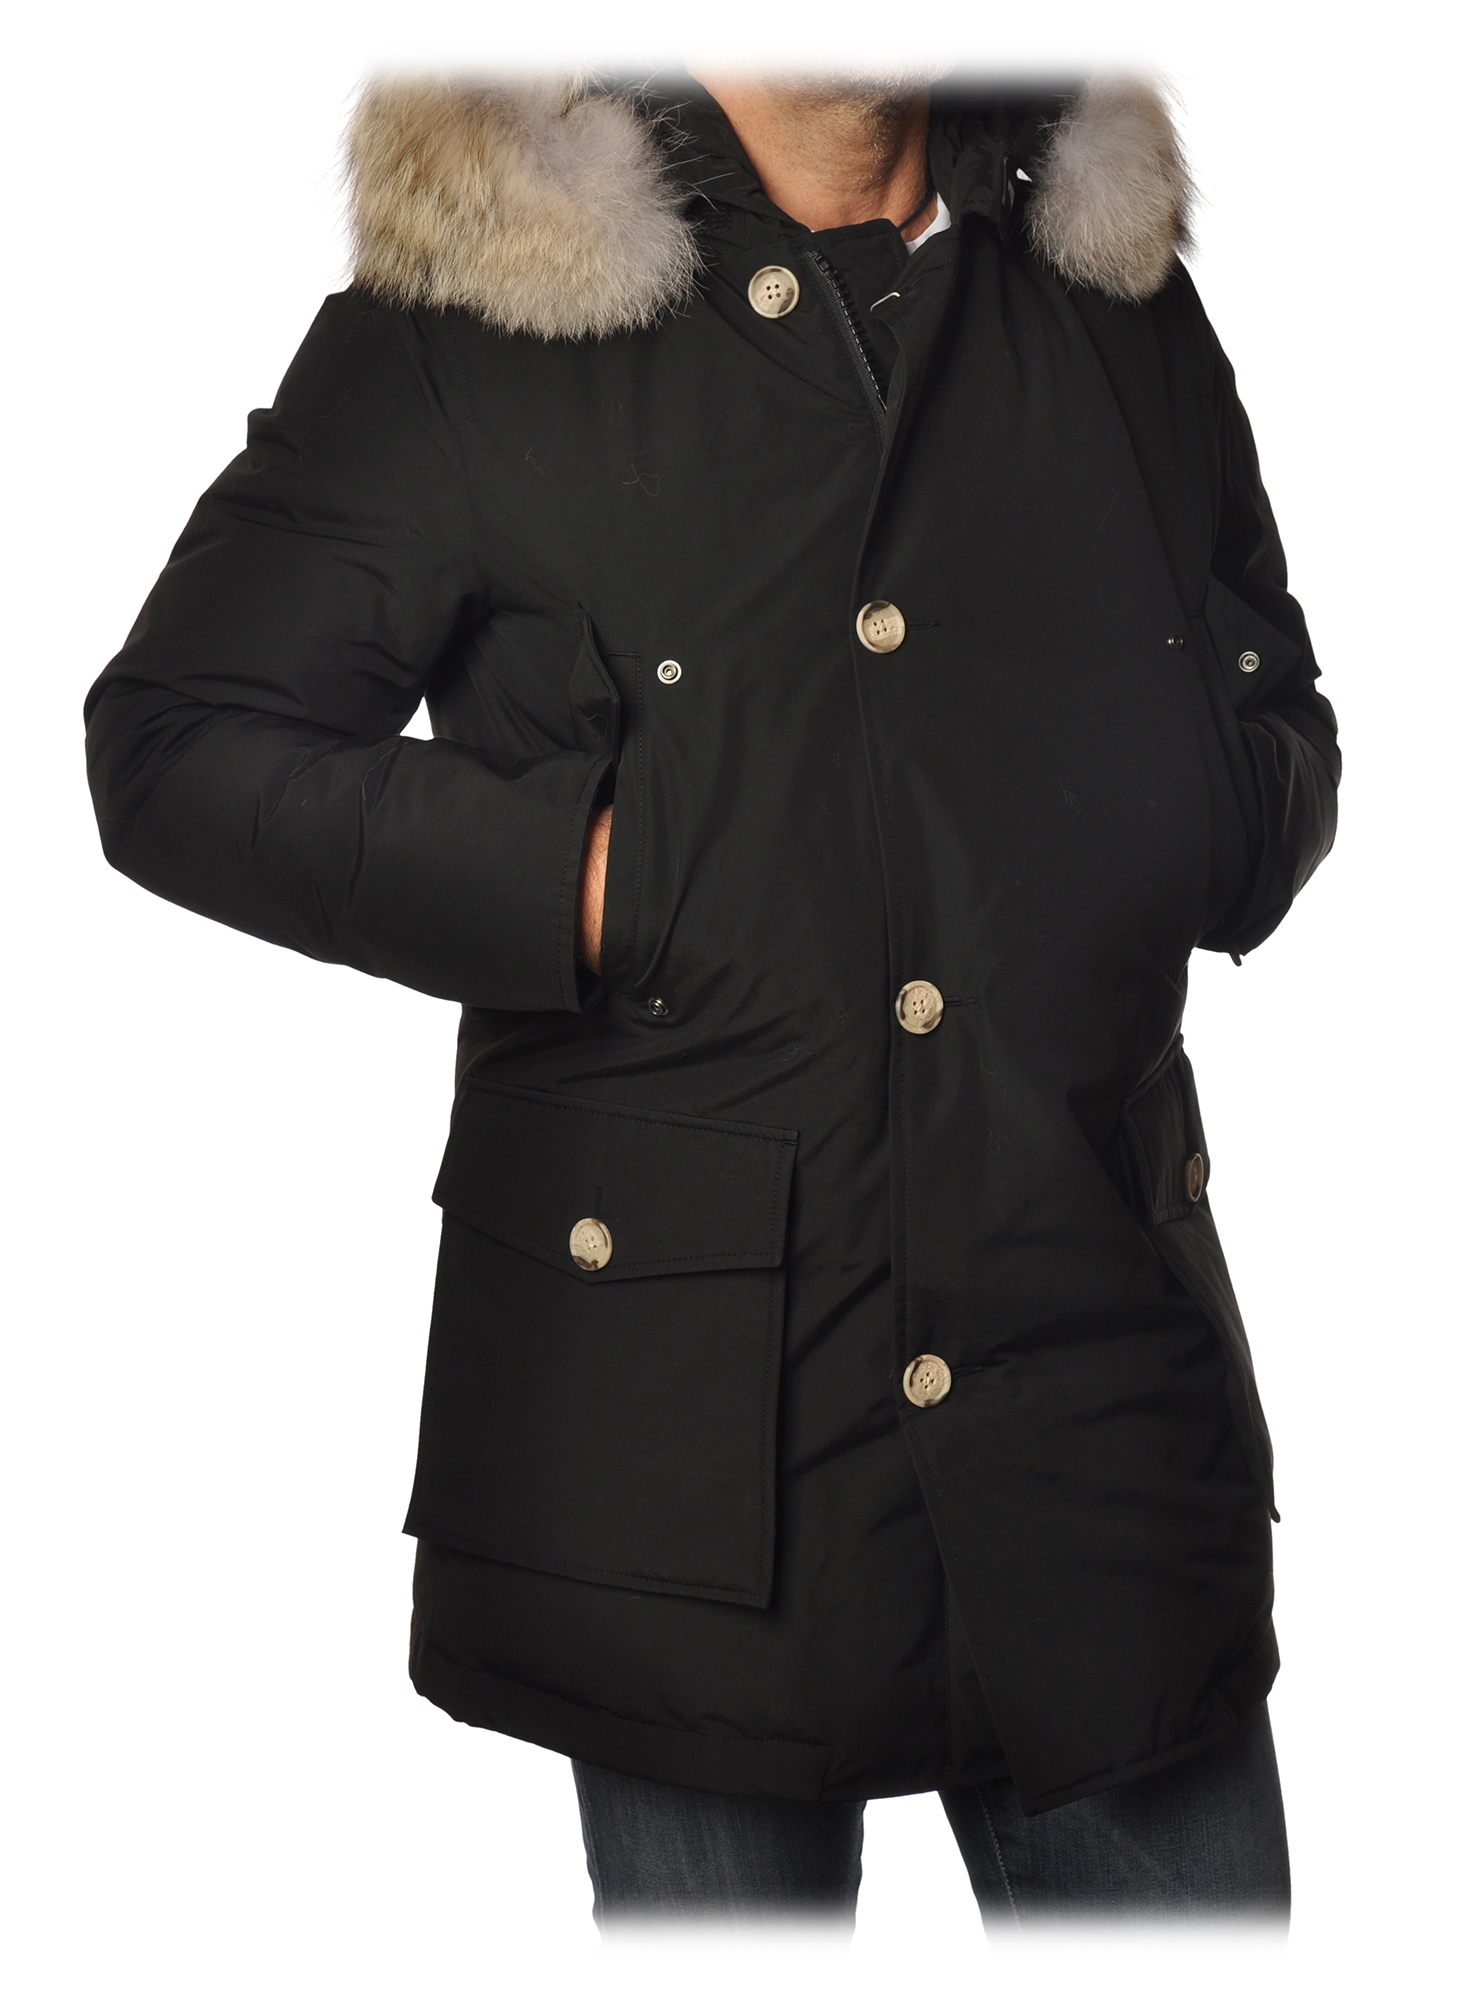 Woolrich - Arctic Parka With Detachable Fur - Black - Jacket